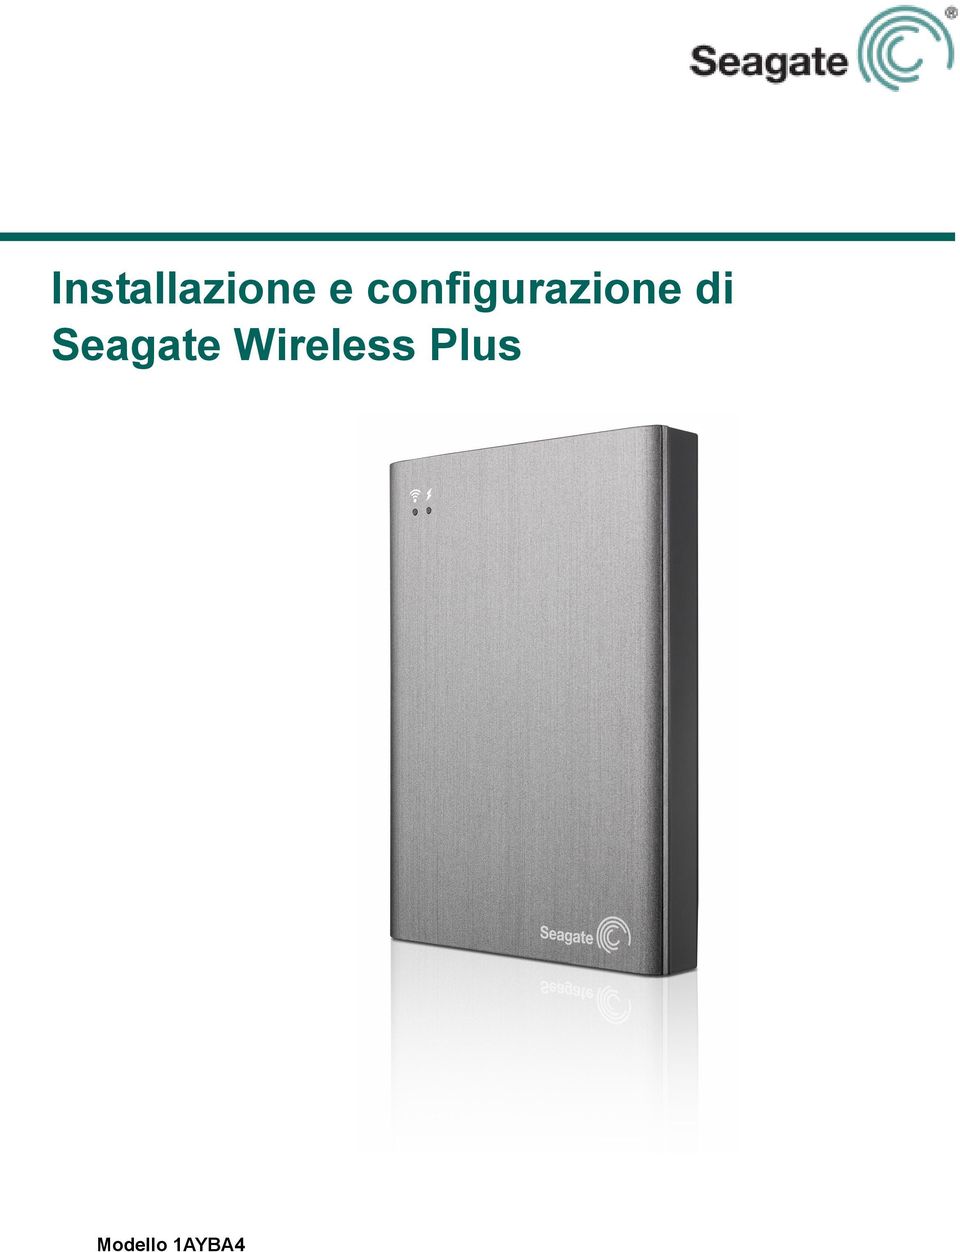 Seagate Wireless